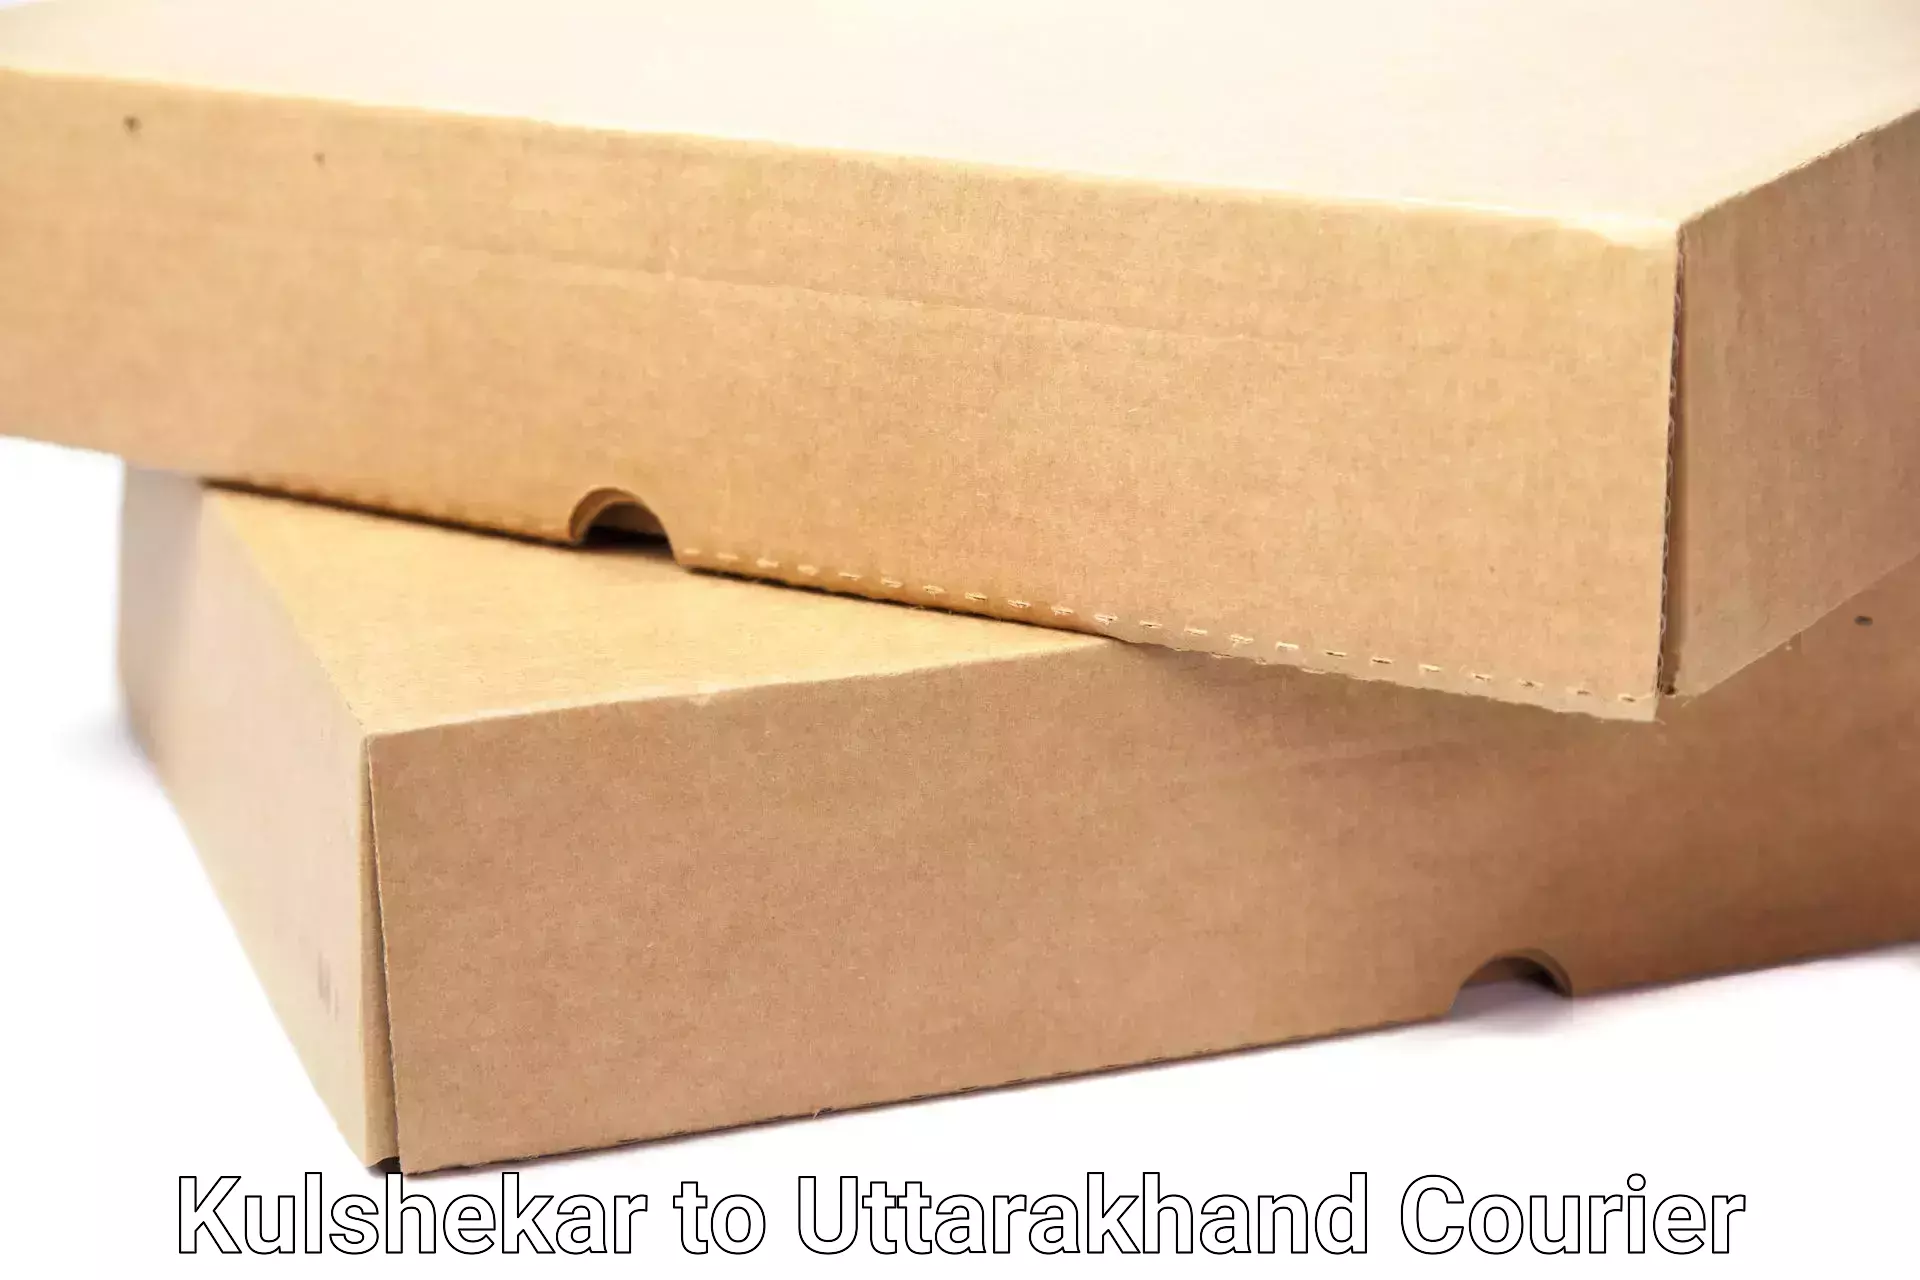 Household goods transport service Kulshekar to Uttarakhand